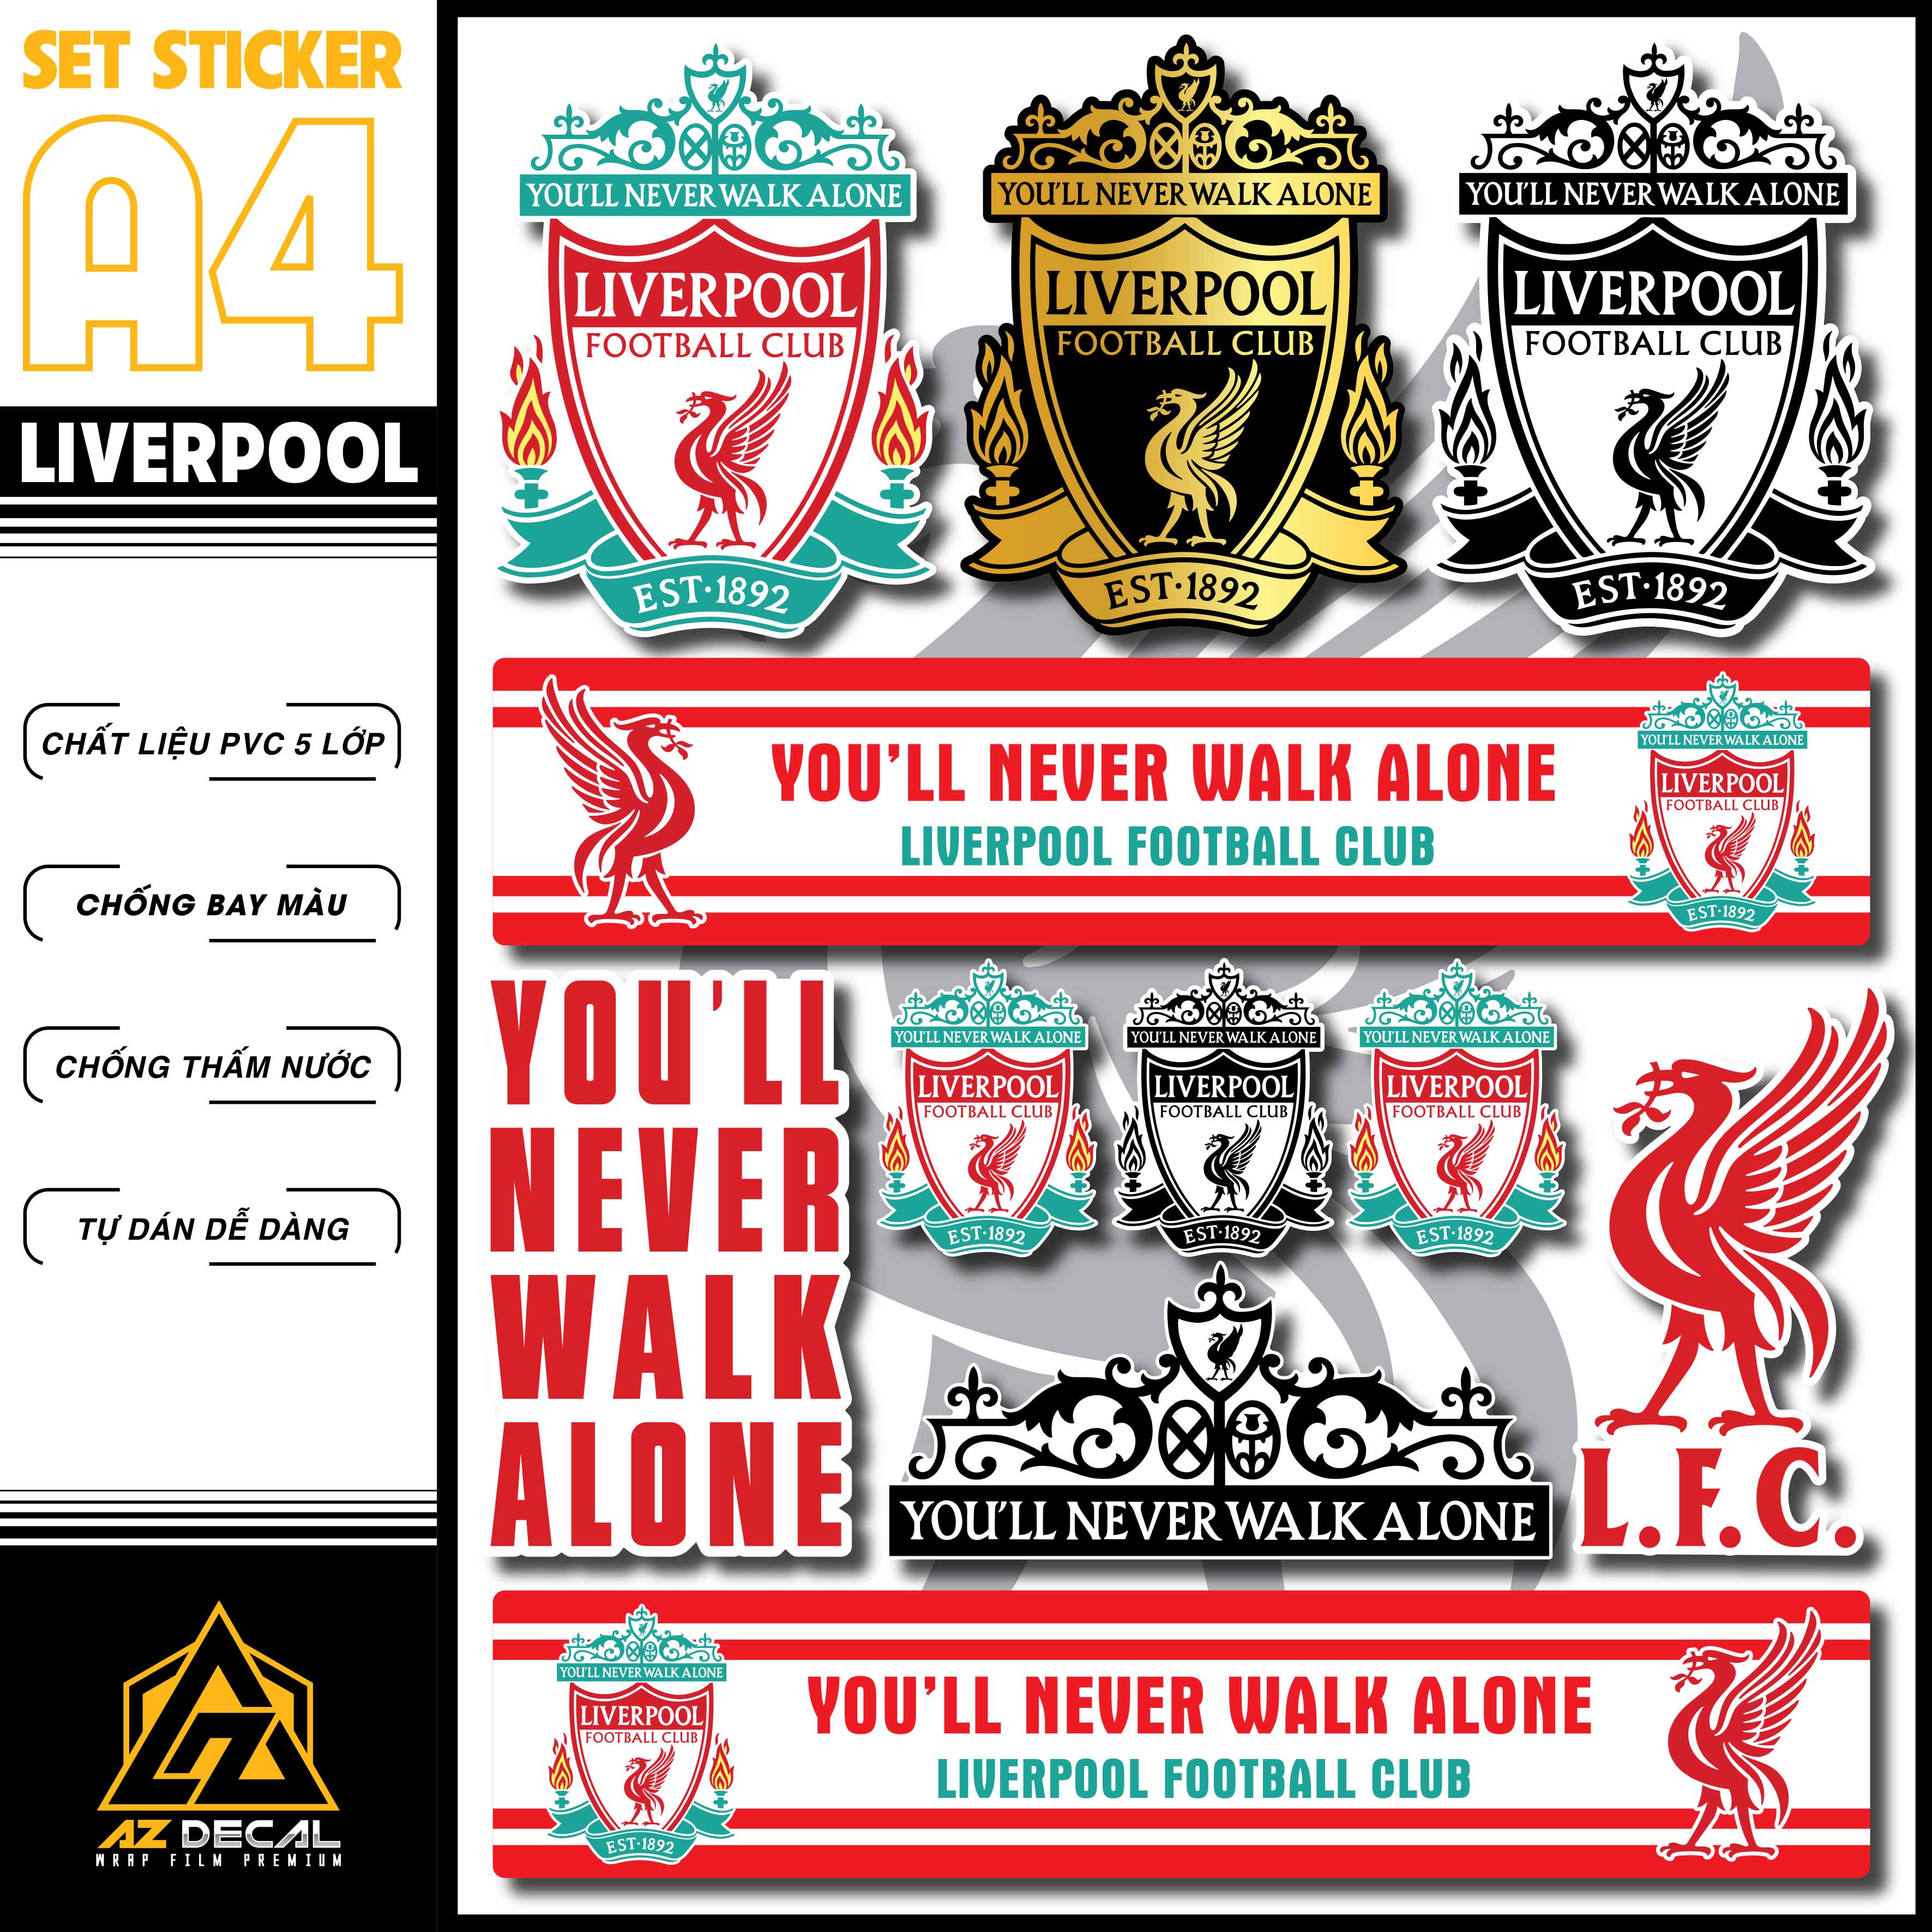 Hình Dán Sticker CLB Liverpool Dán Xe, Dán Nón, Điện Thoại, Laptop - Logo Đội Bóng Chất Liệu Chống Thấm Nước, Bền Màu